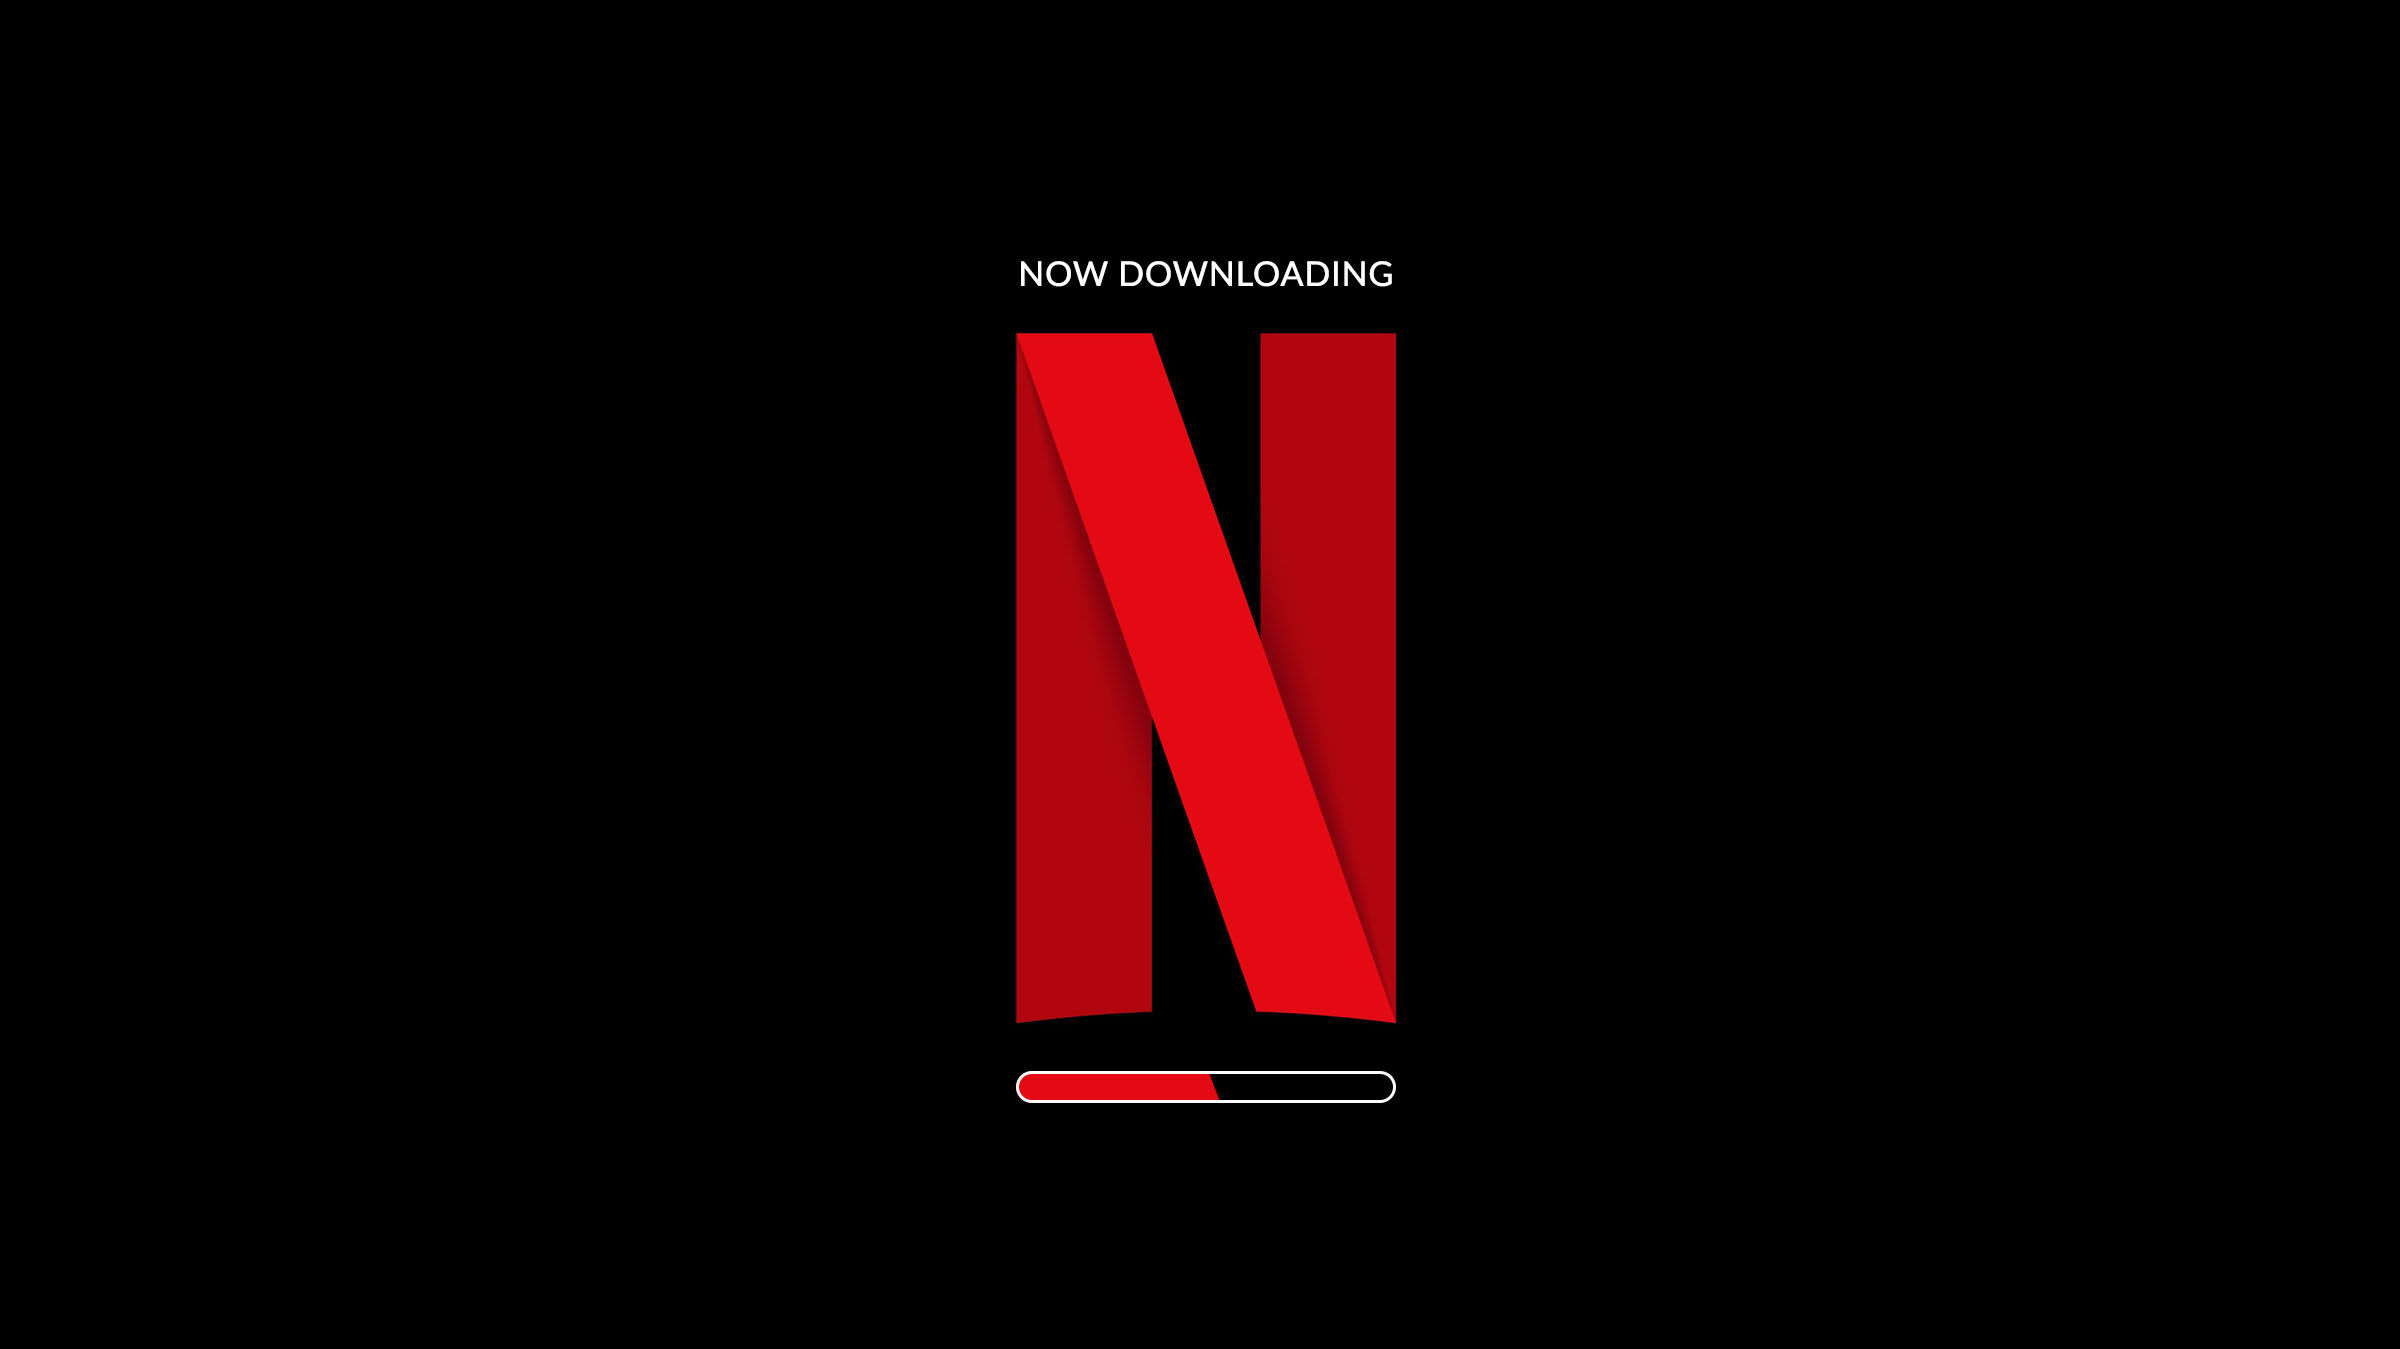 Netflix Offline Mode